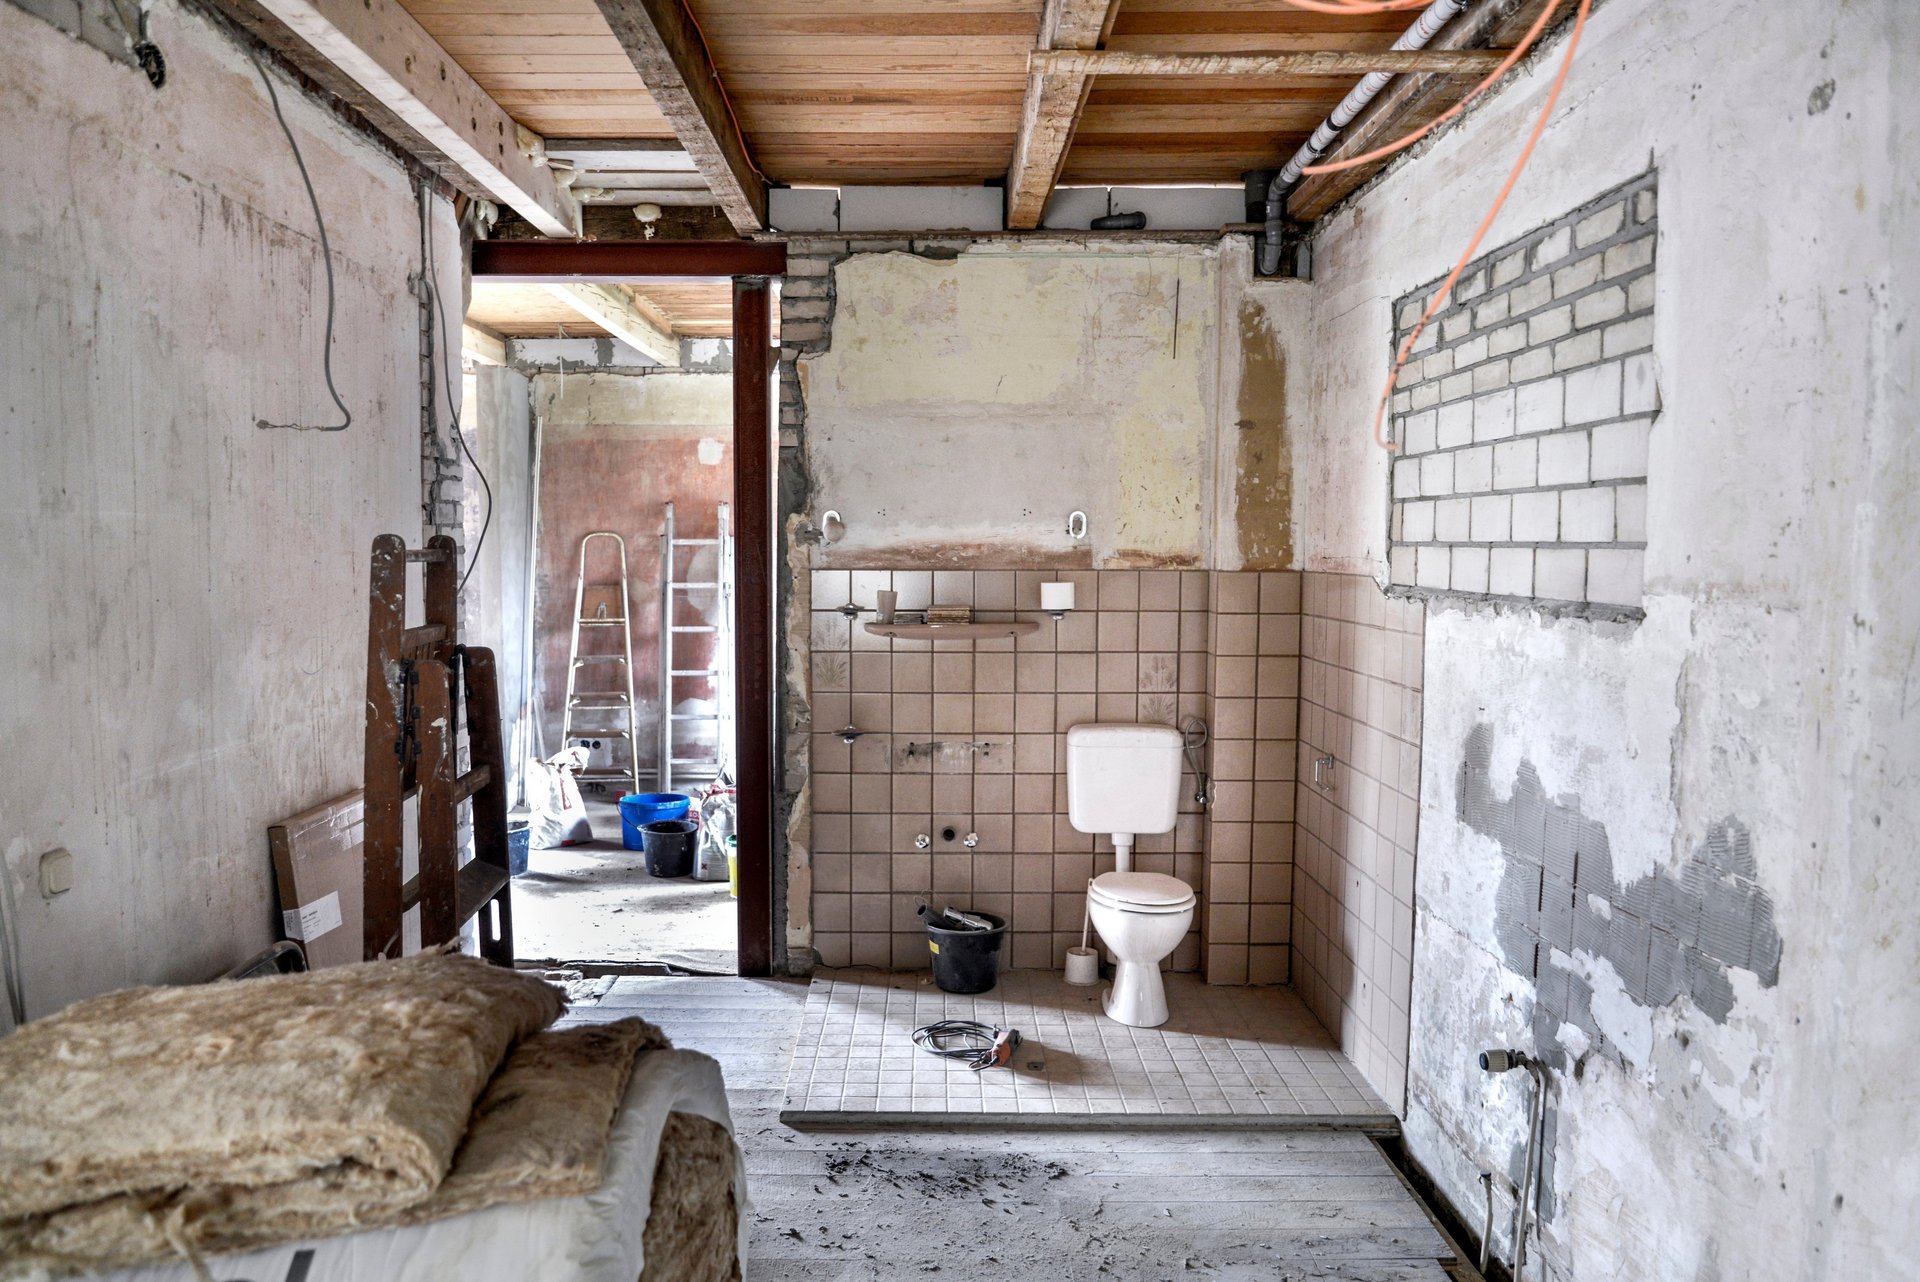 Toilette in einem verfallenen Gebäude, Foto: beugdesign – stock.adobe.com